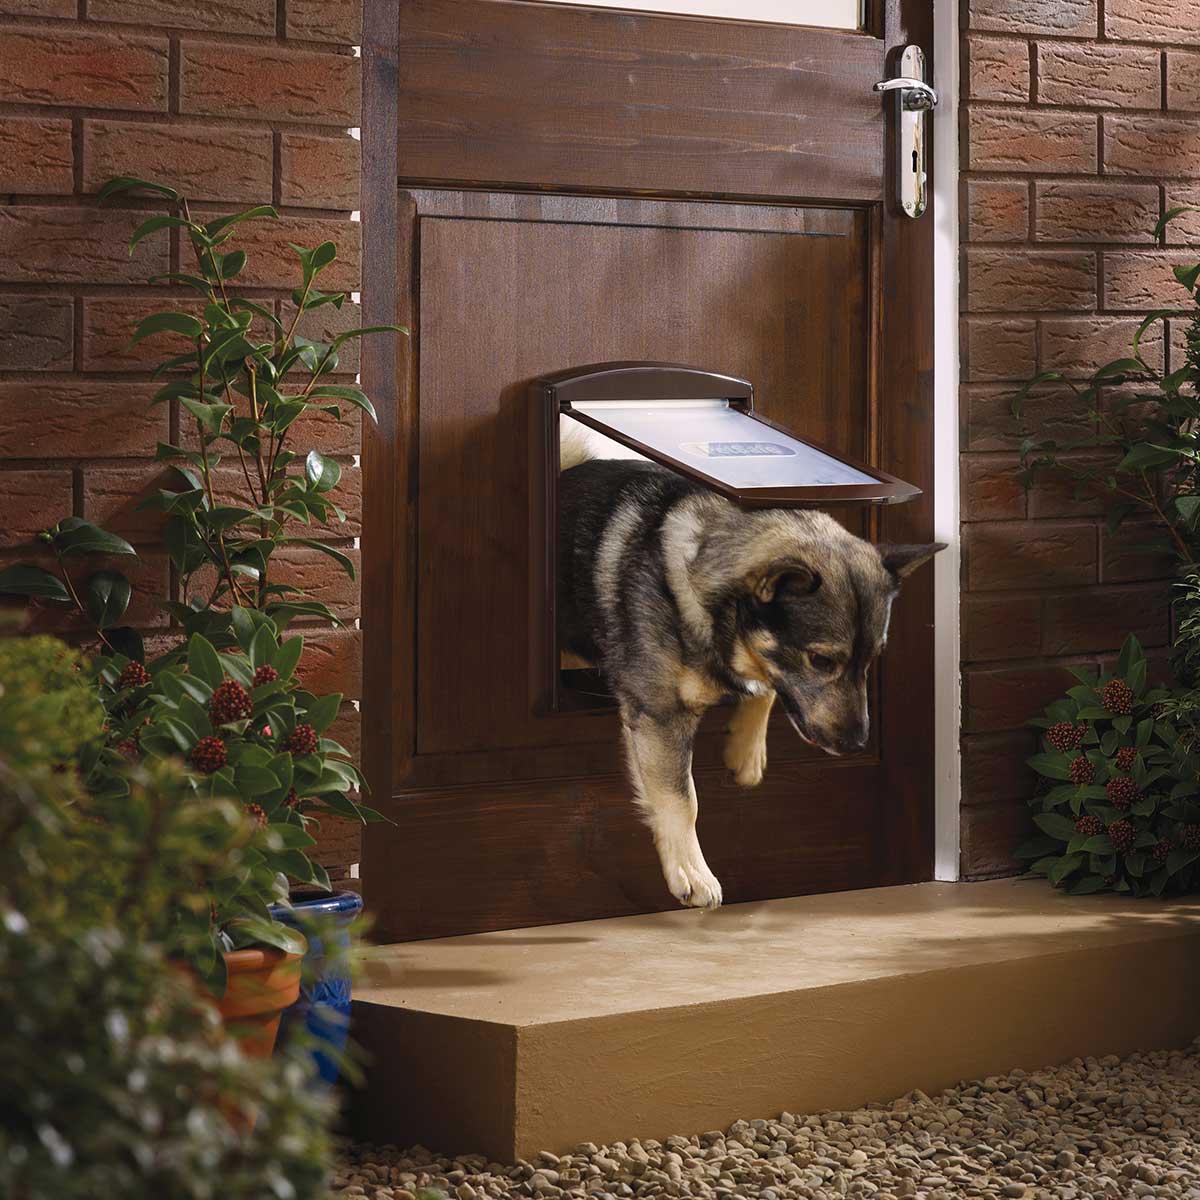 Porte basculanti per cani │ Economiche │ Online │ Consegna a casa 